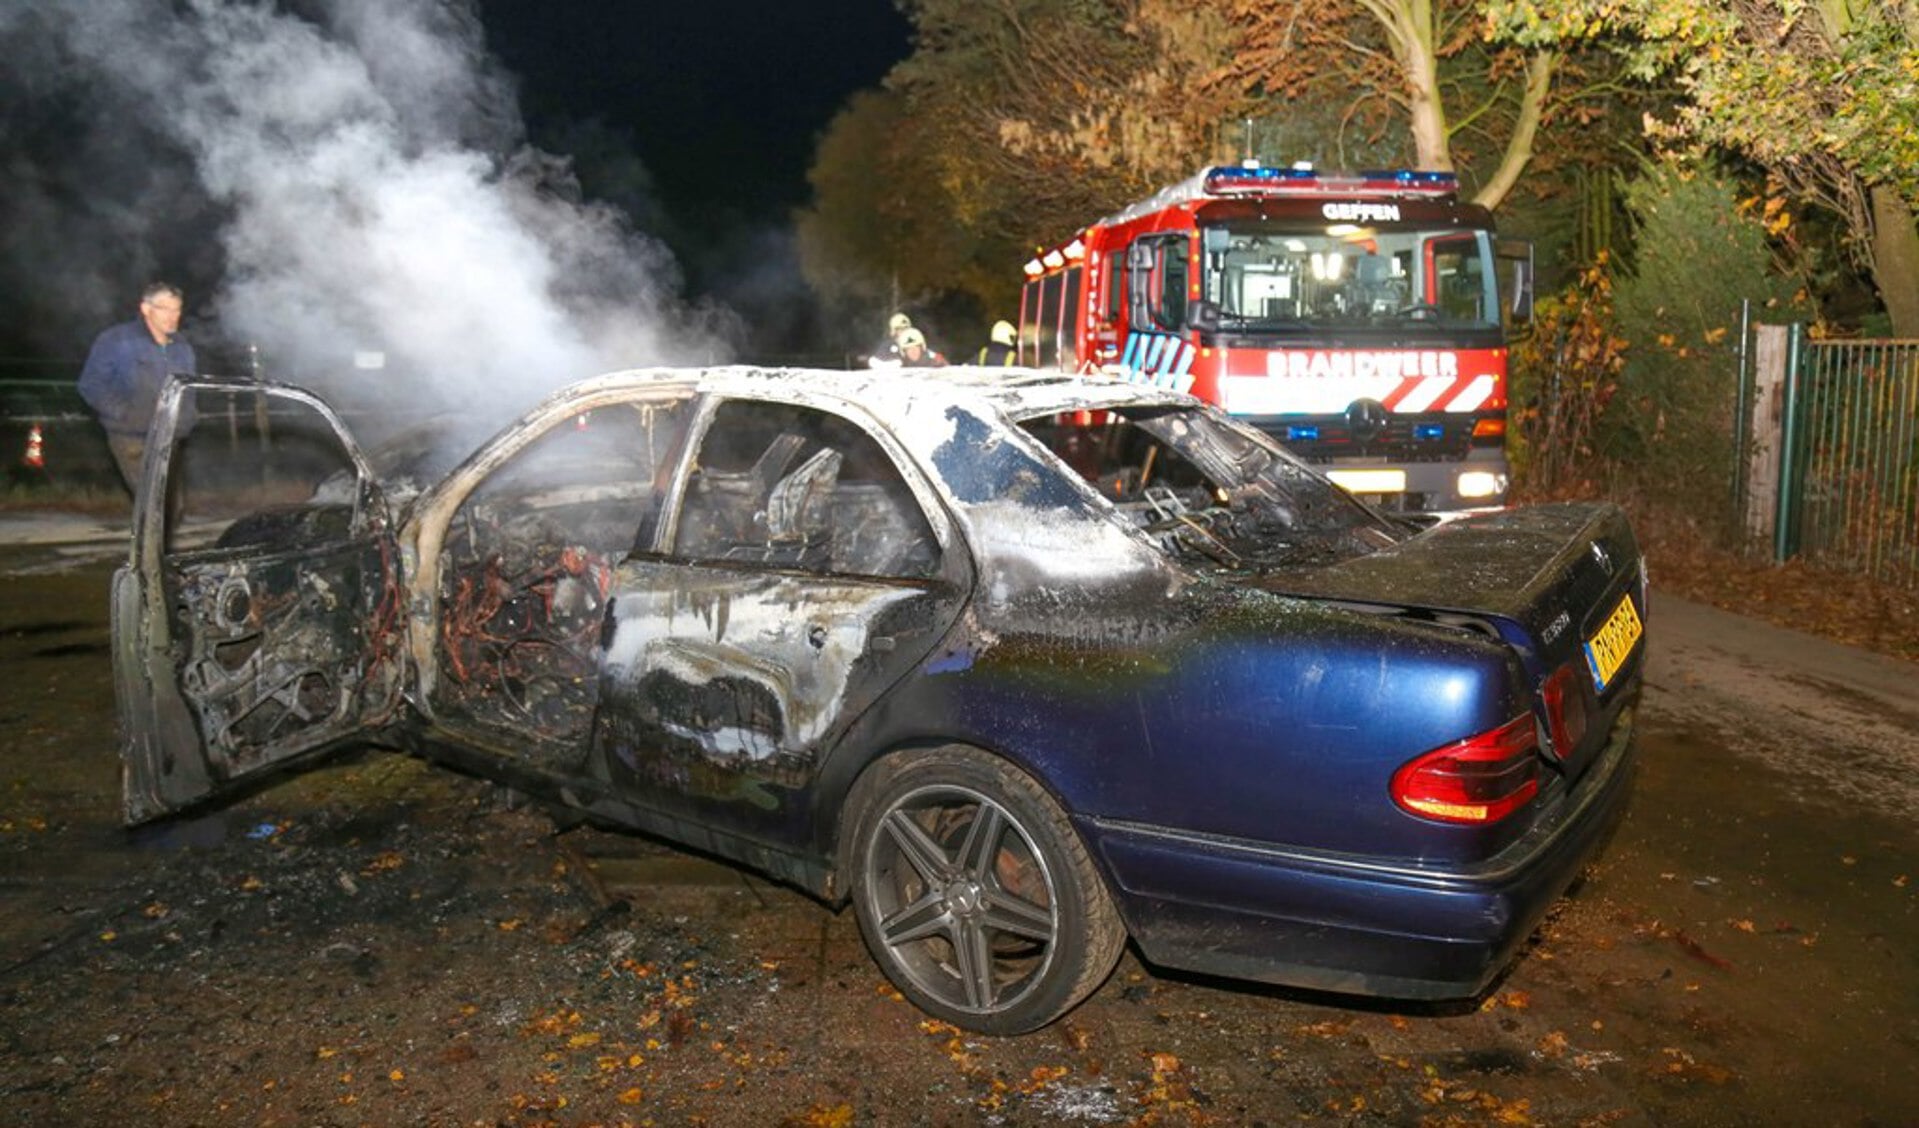 De brandweer bluste de autobrand ( Foto's : Maickel Keijzers / Hendriks multimedia ), 